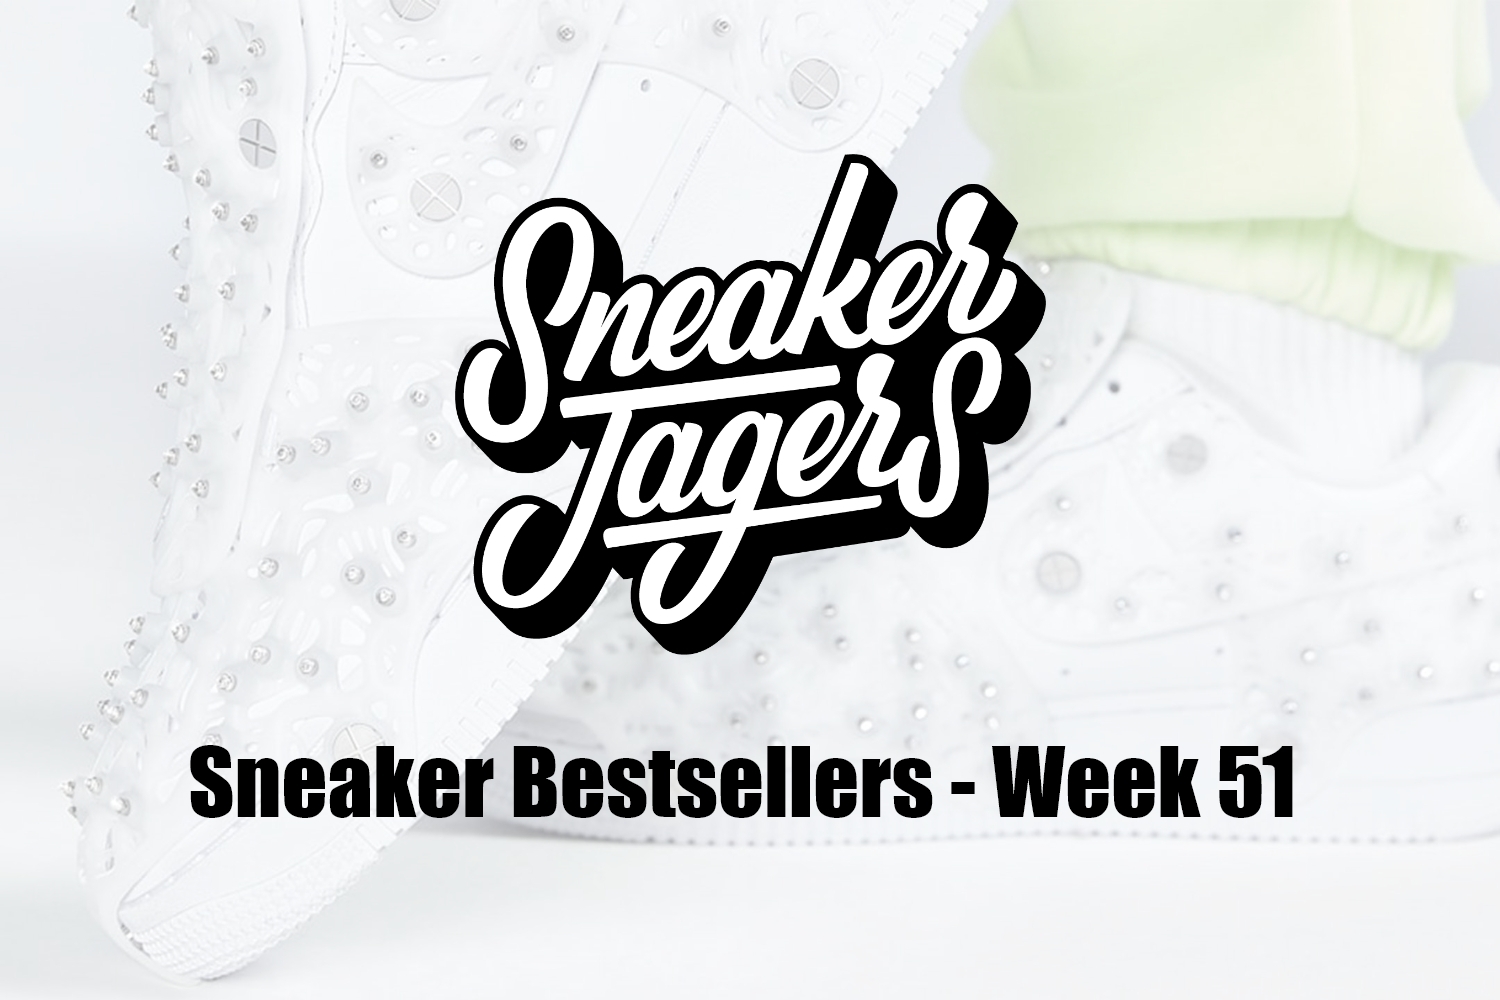 Our Sneaker Bestsellers - Week 51 - What's on Trend 📈